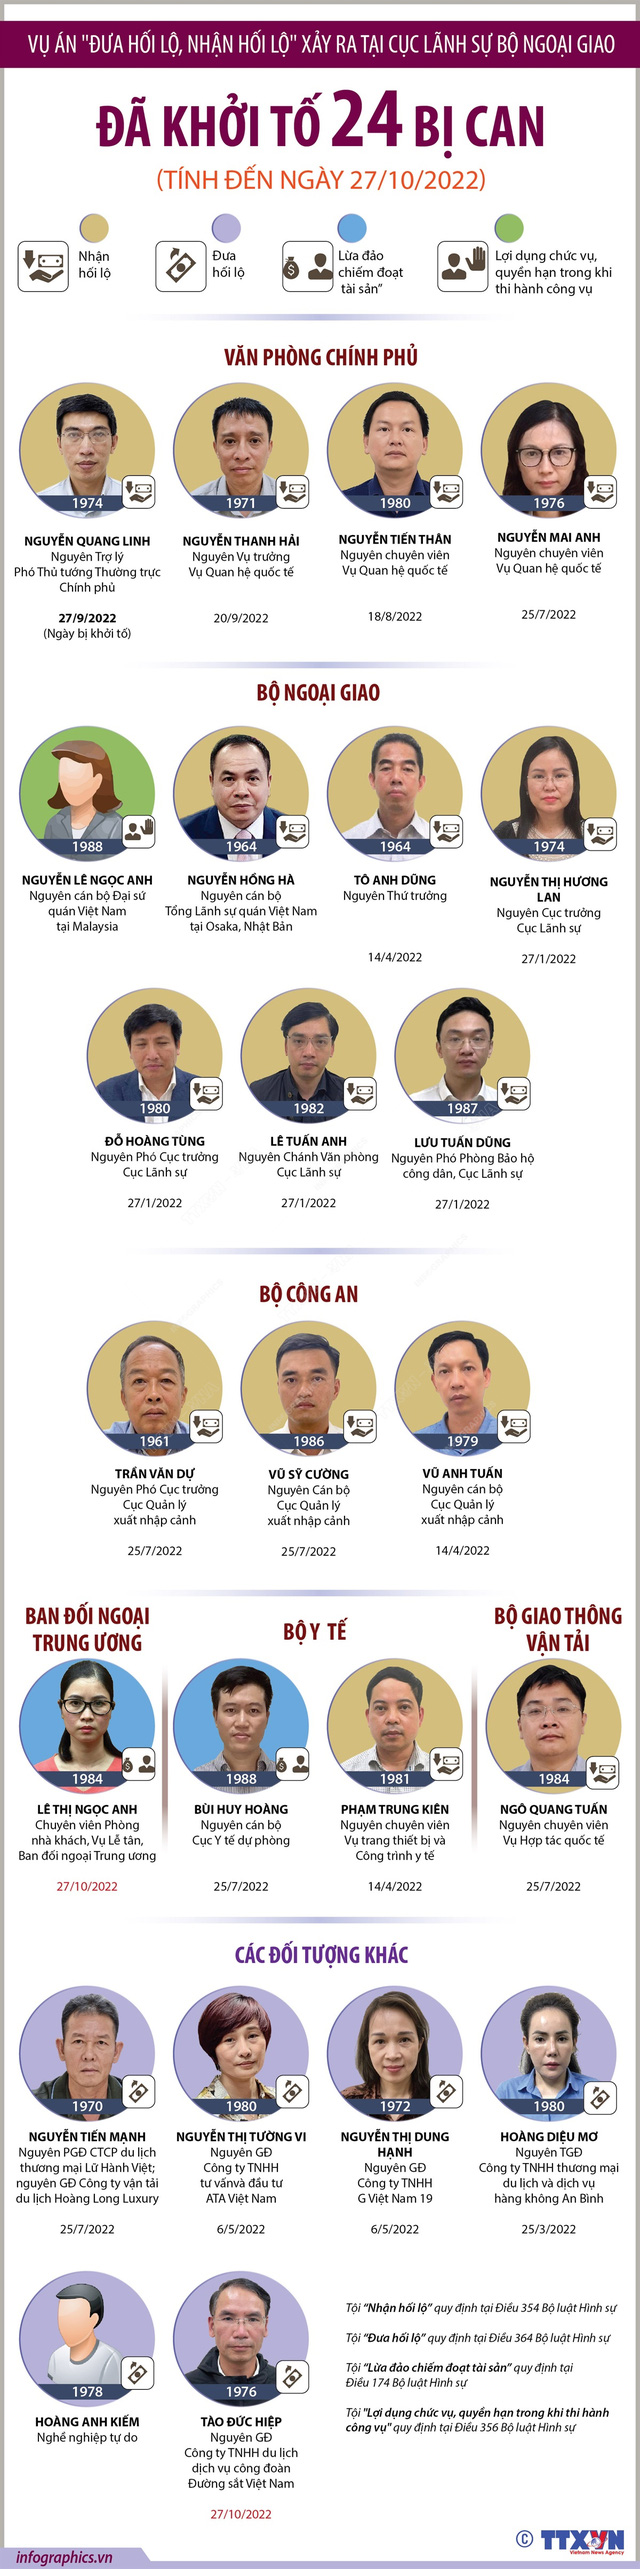 Vụ án xảy ra tại Bộ Ngoại giao, Hà Nội và các tỉnh, thành phố: Đã khởi tố 24 bị can - Ảnh 1.